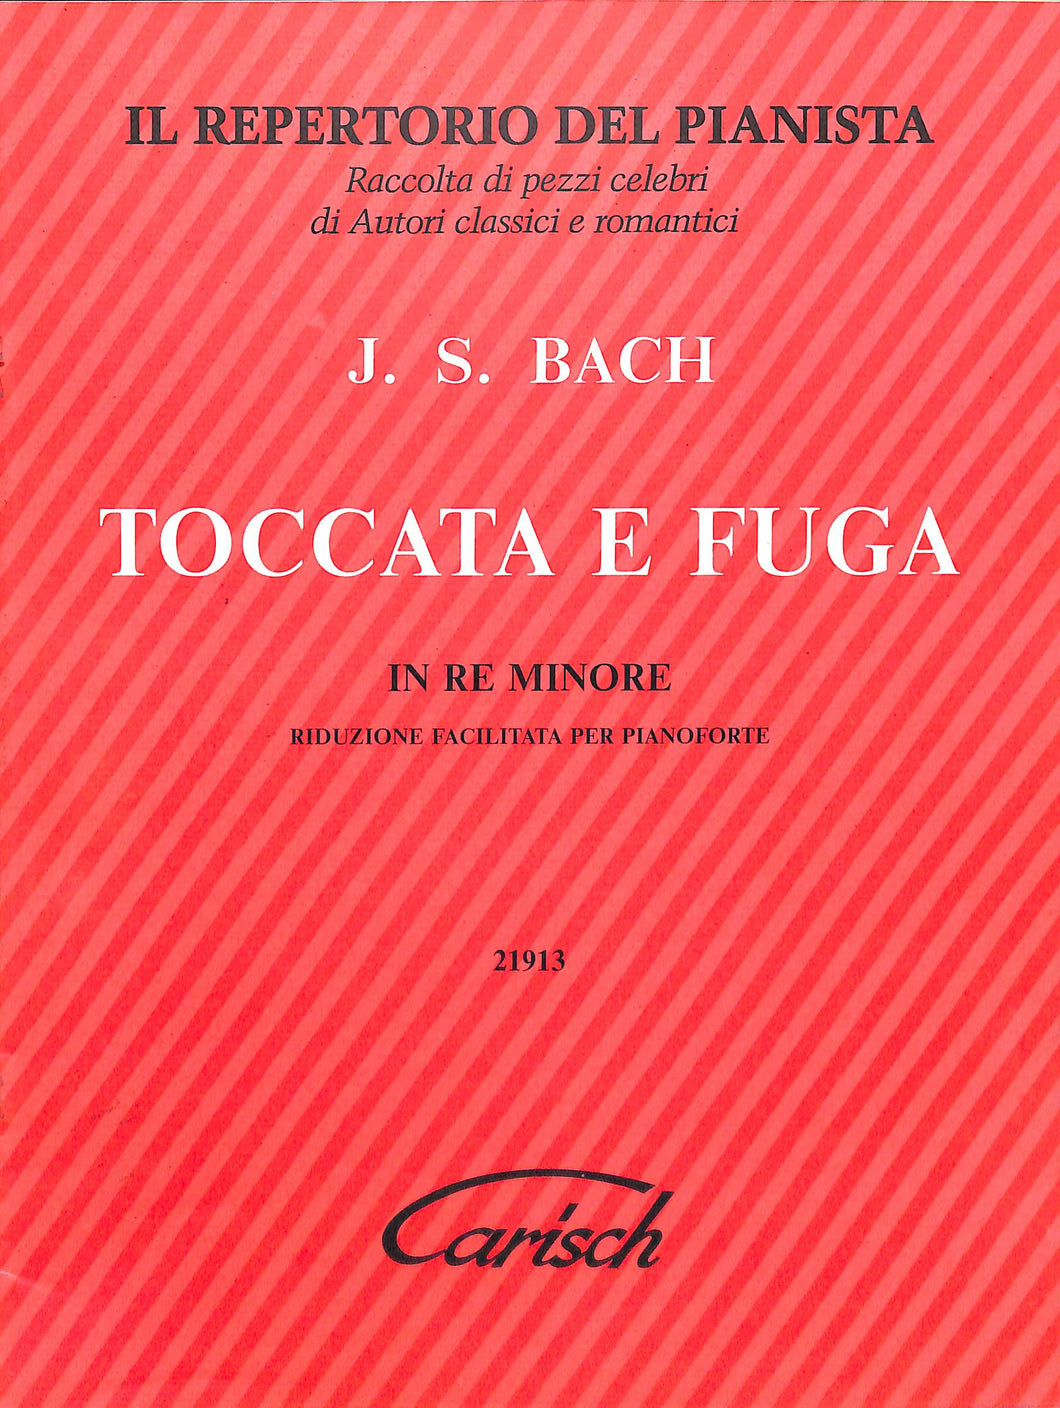 Spartito J. S. Bach Toccata E Fuga In Re Minore